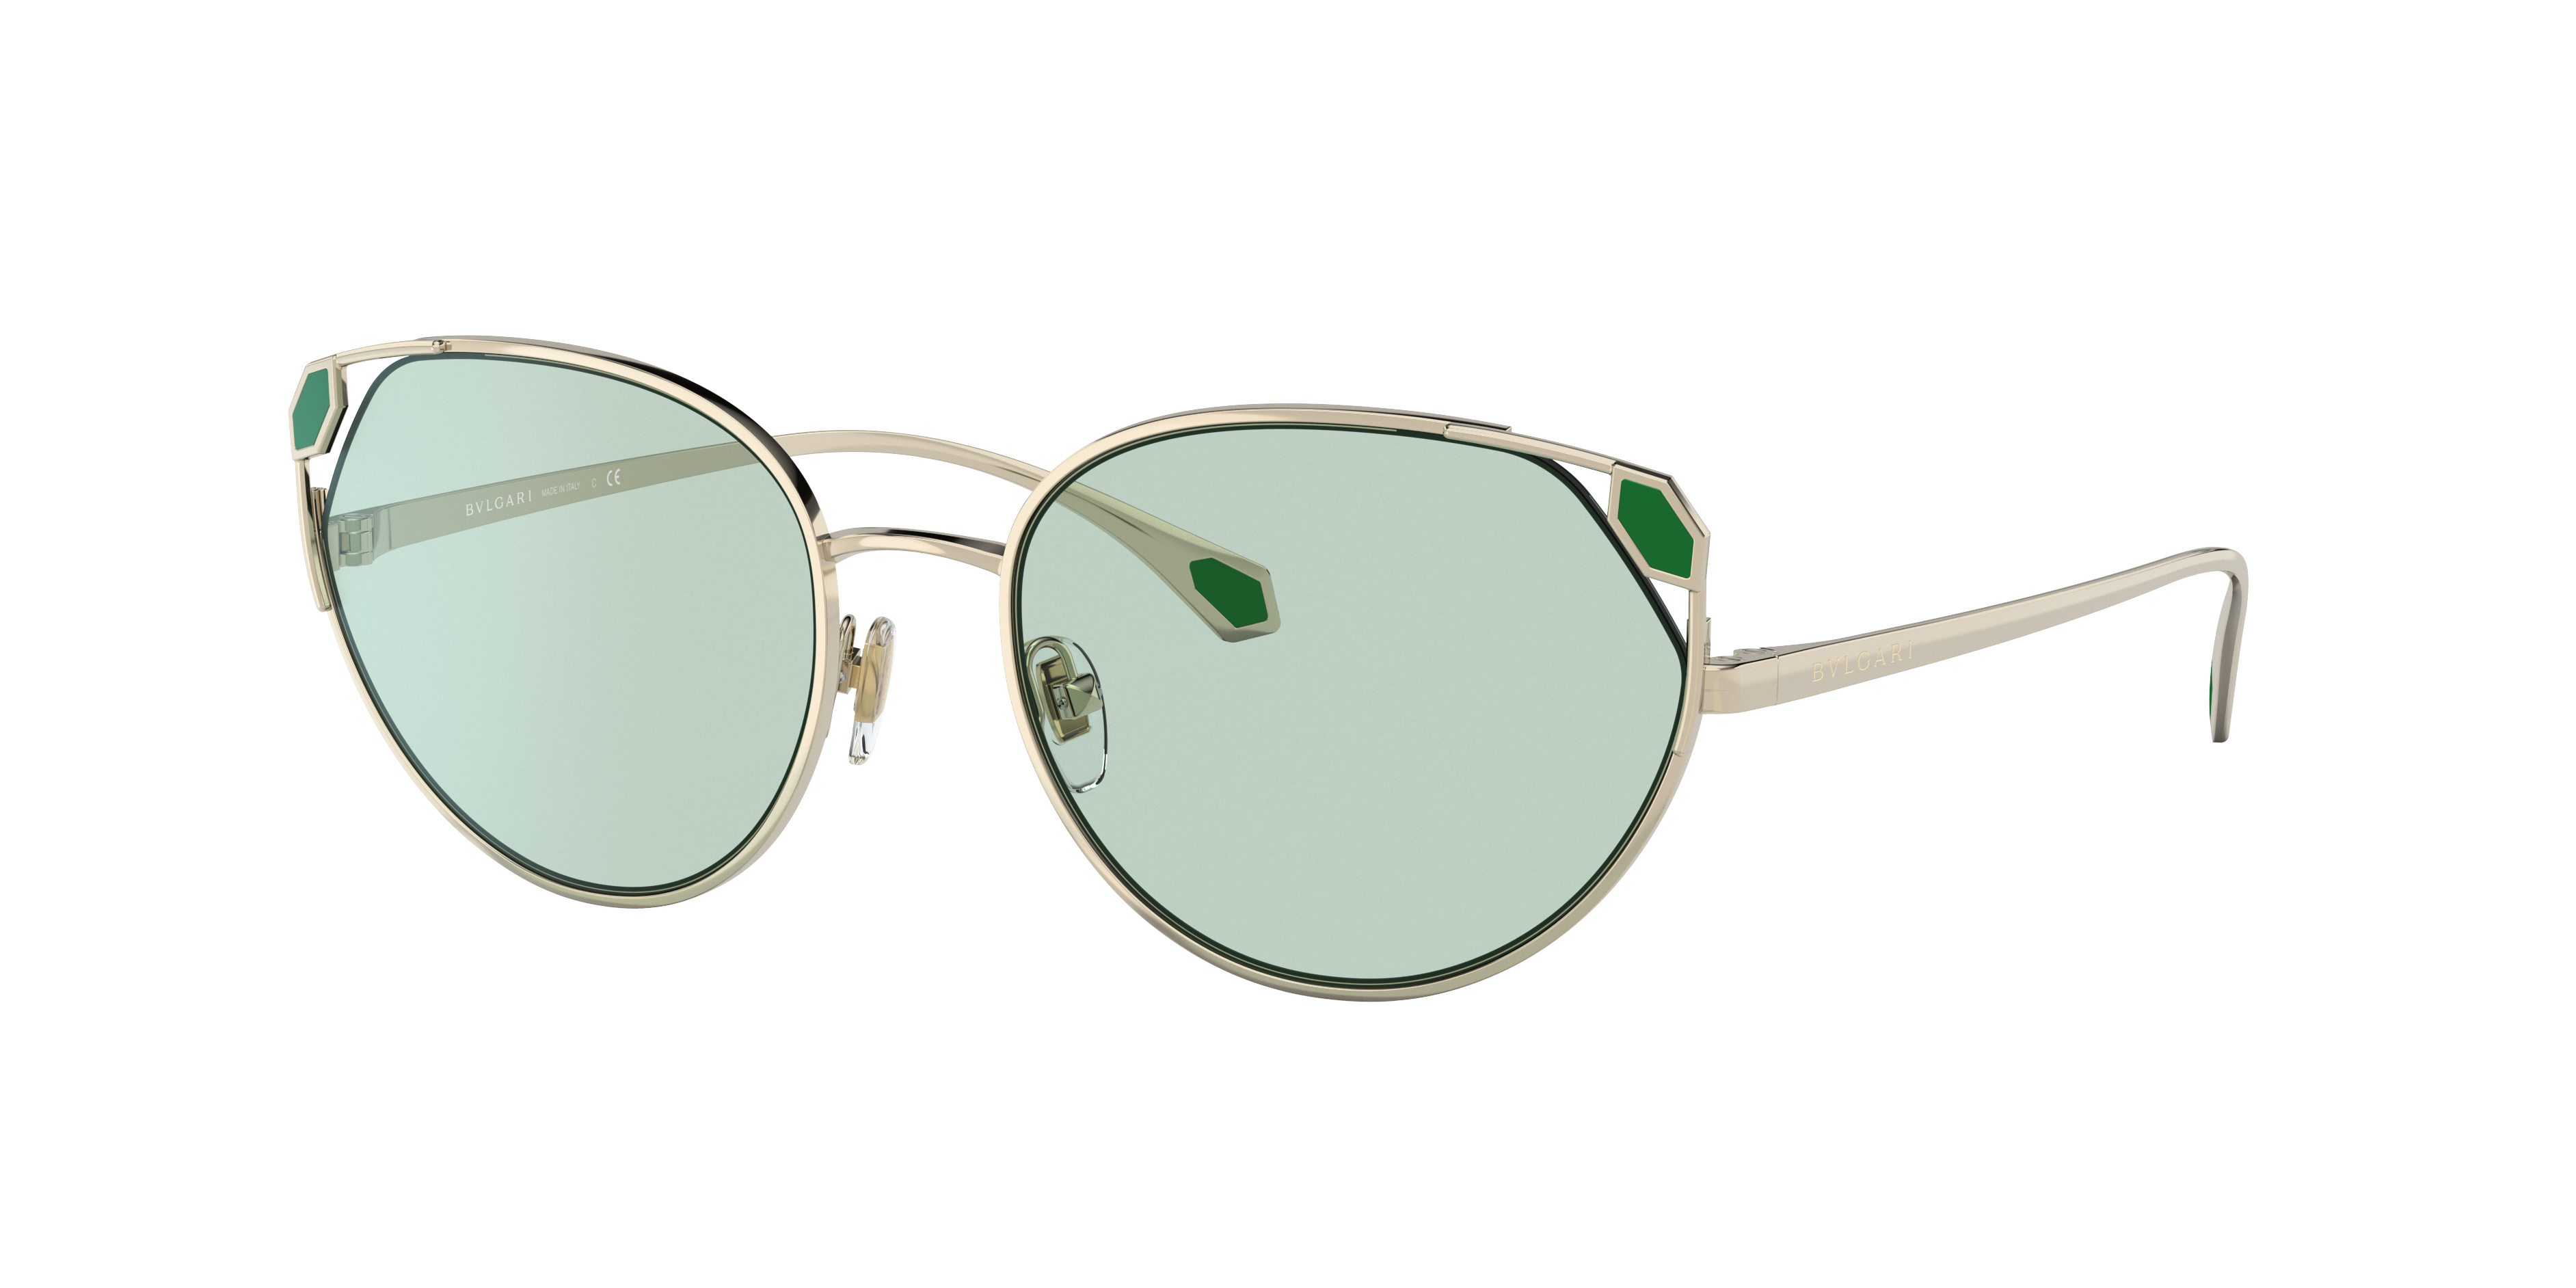 Consulte nosso catálogo de Óculos de Sol Bulgari Eyewear com diversos modelos e preços para sua escolha.